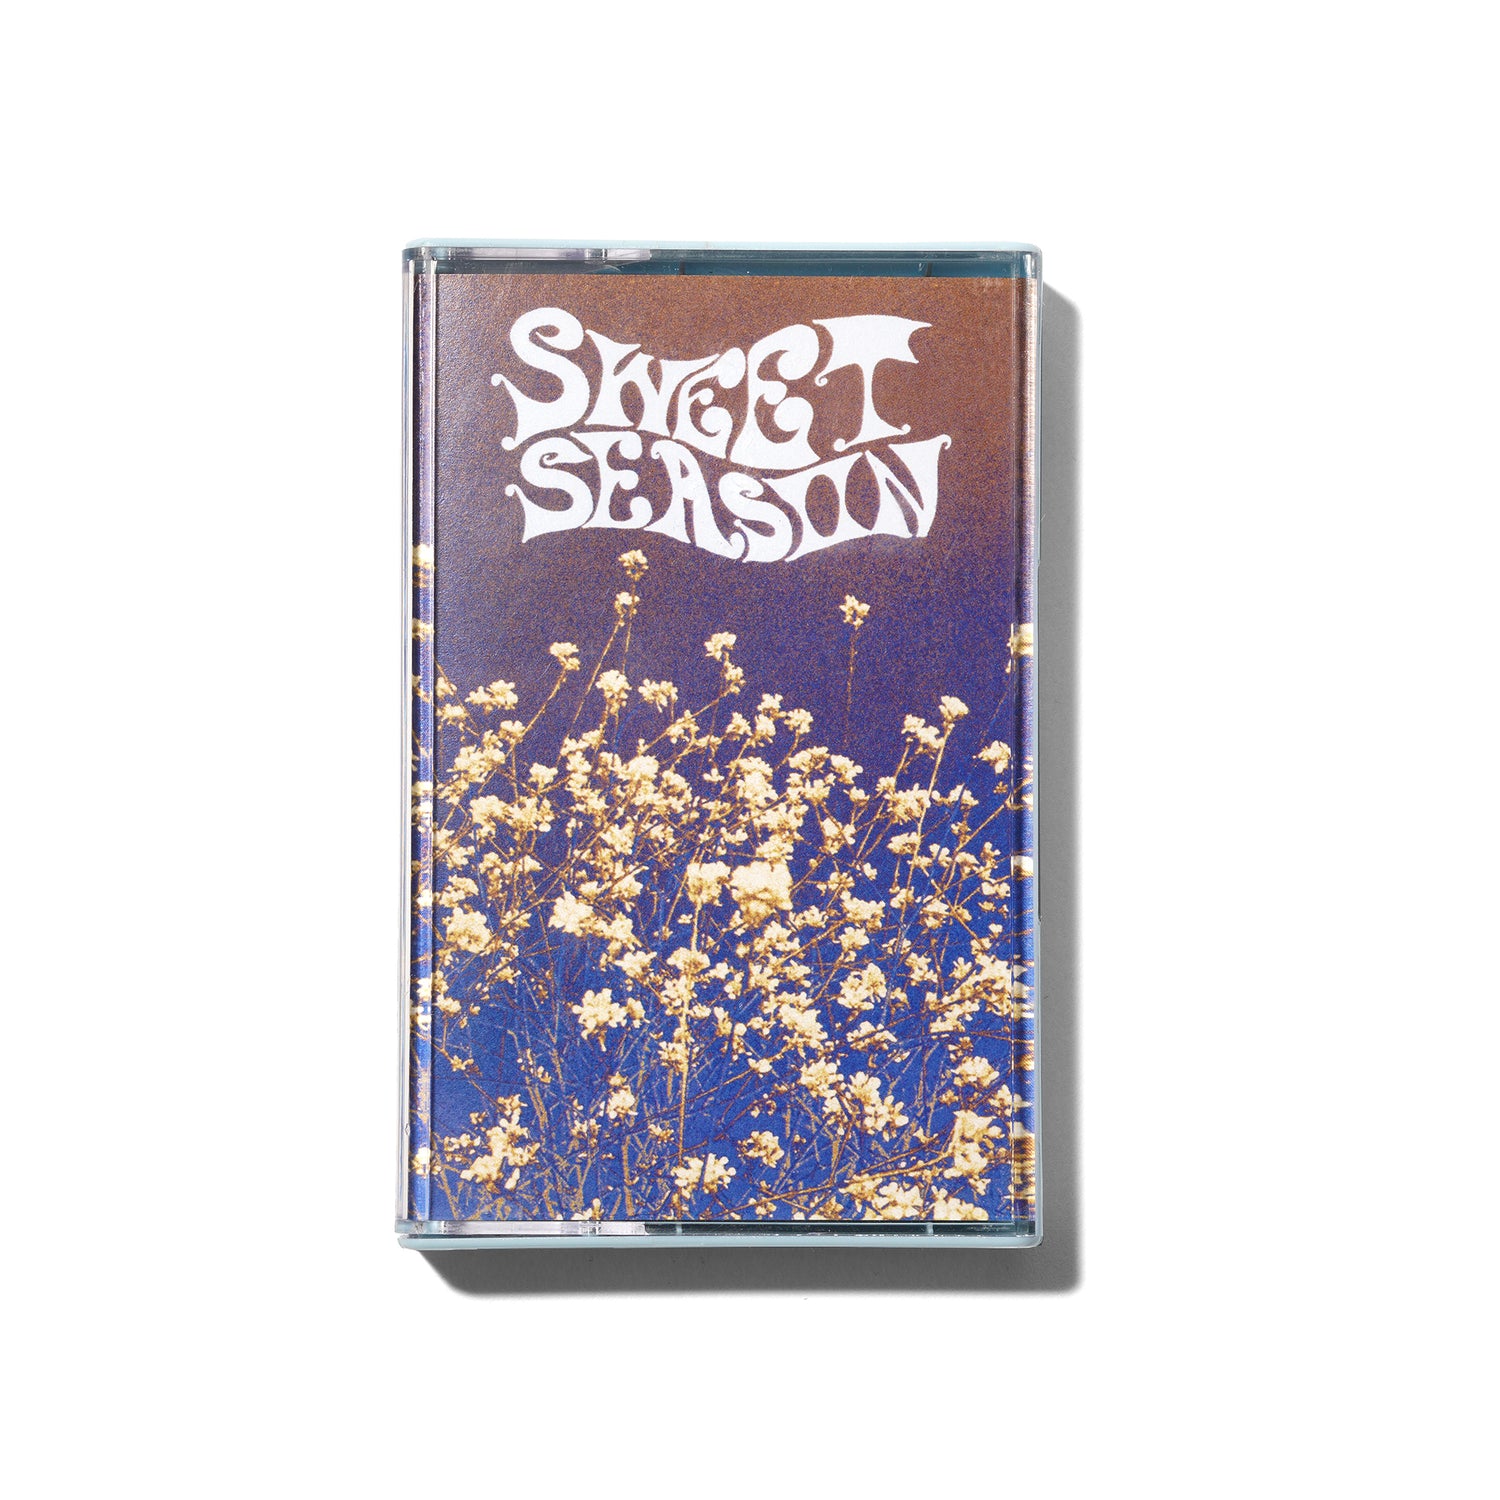 Ben Gore 'Sweet Season' Cassette Tape